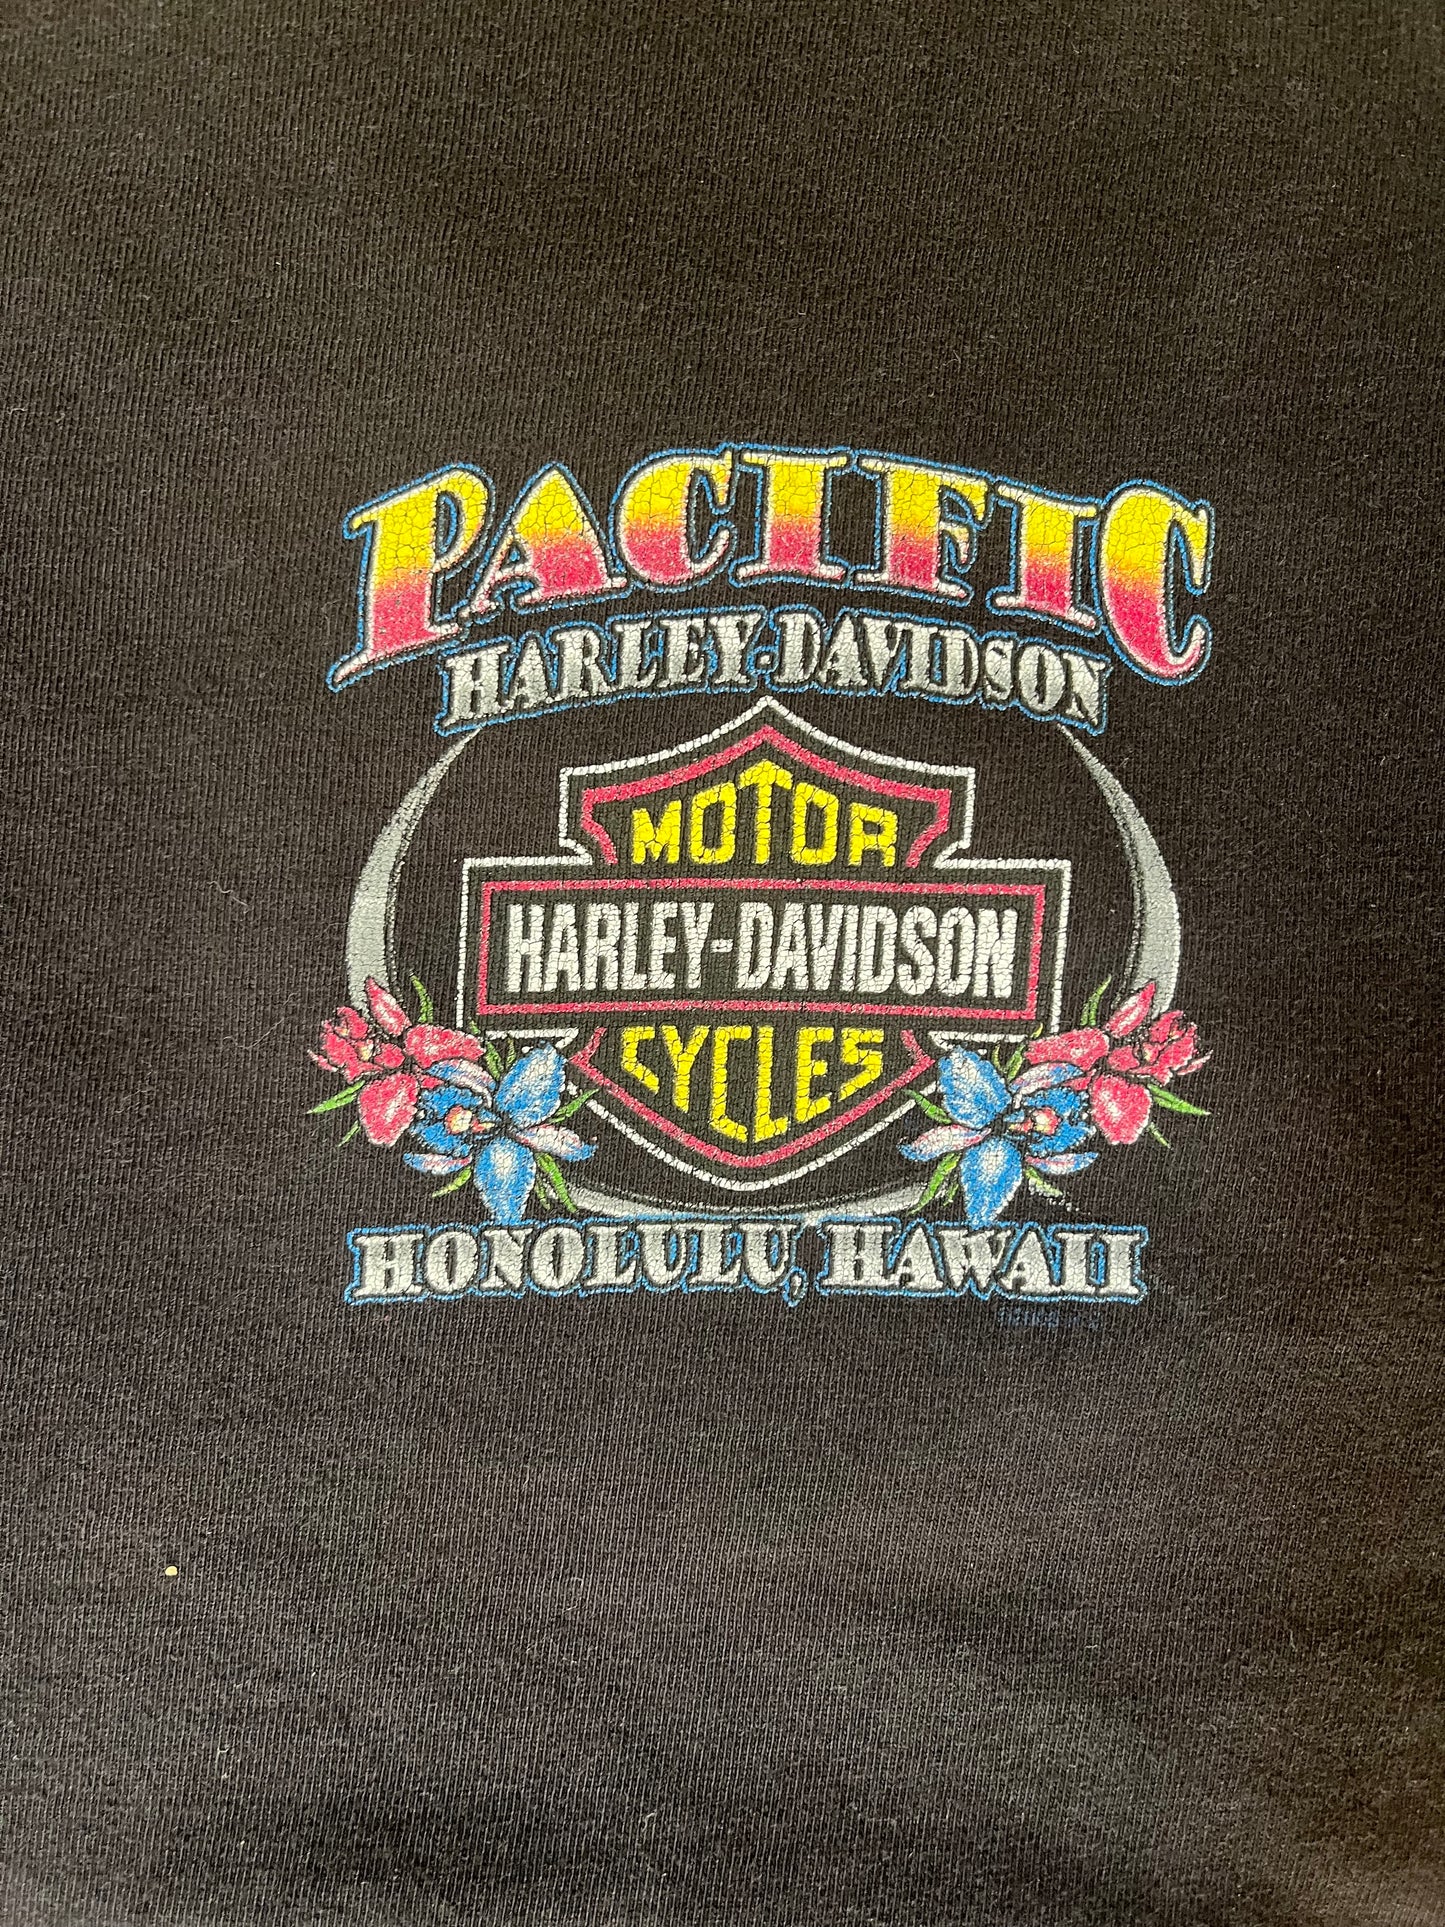 Harley Davidson Honalulu Hawaii Tee